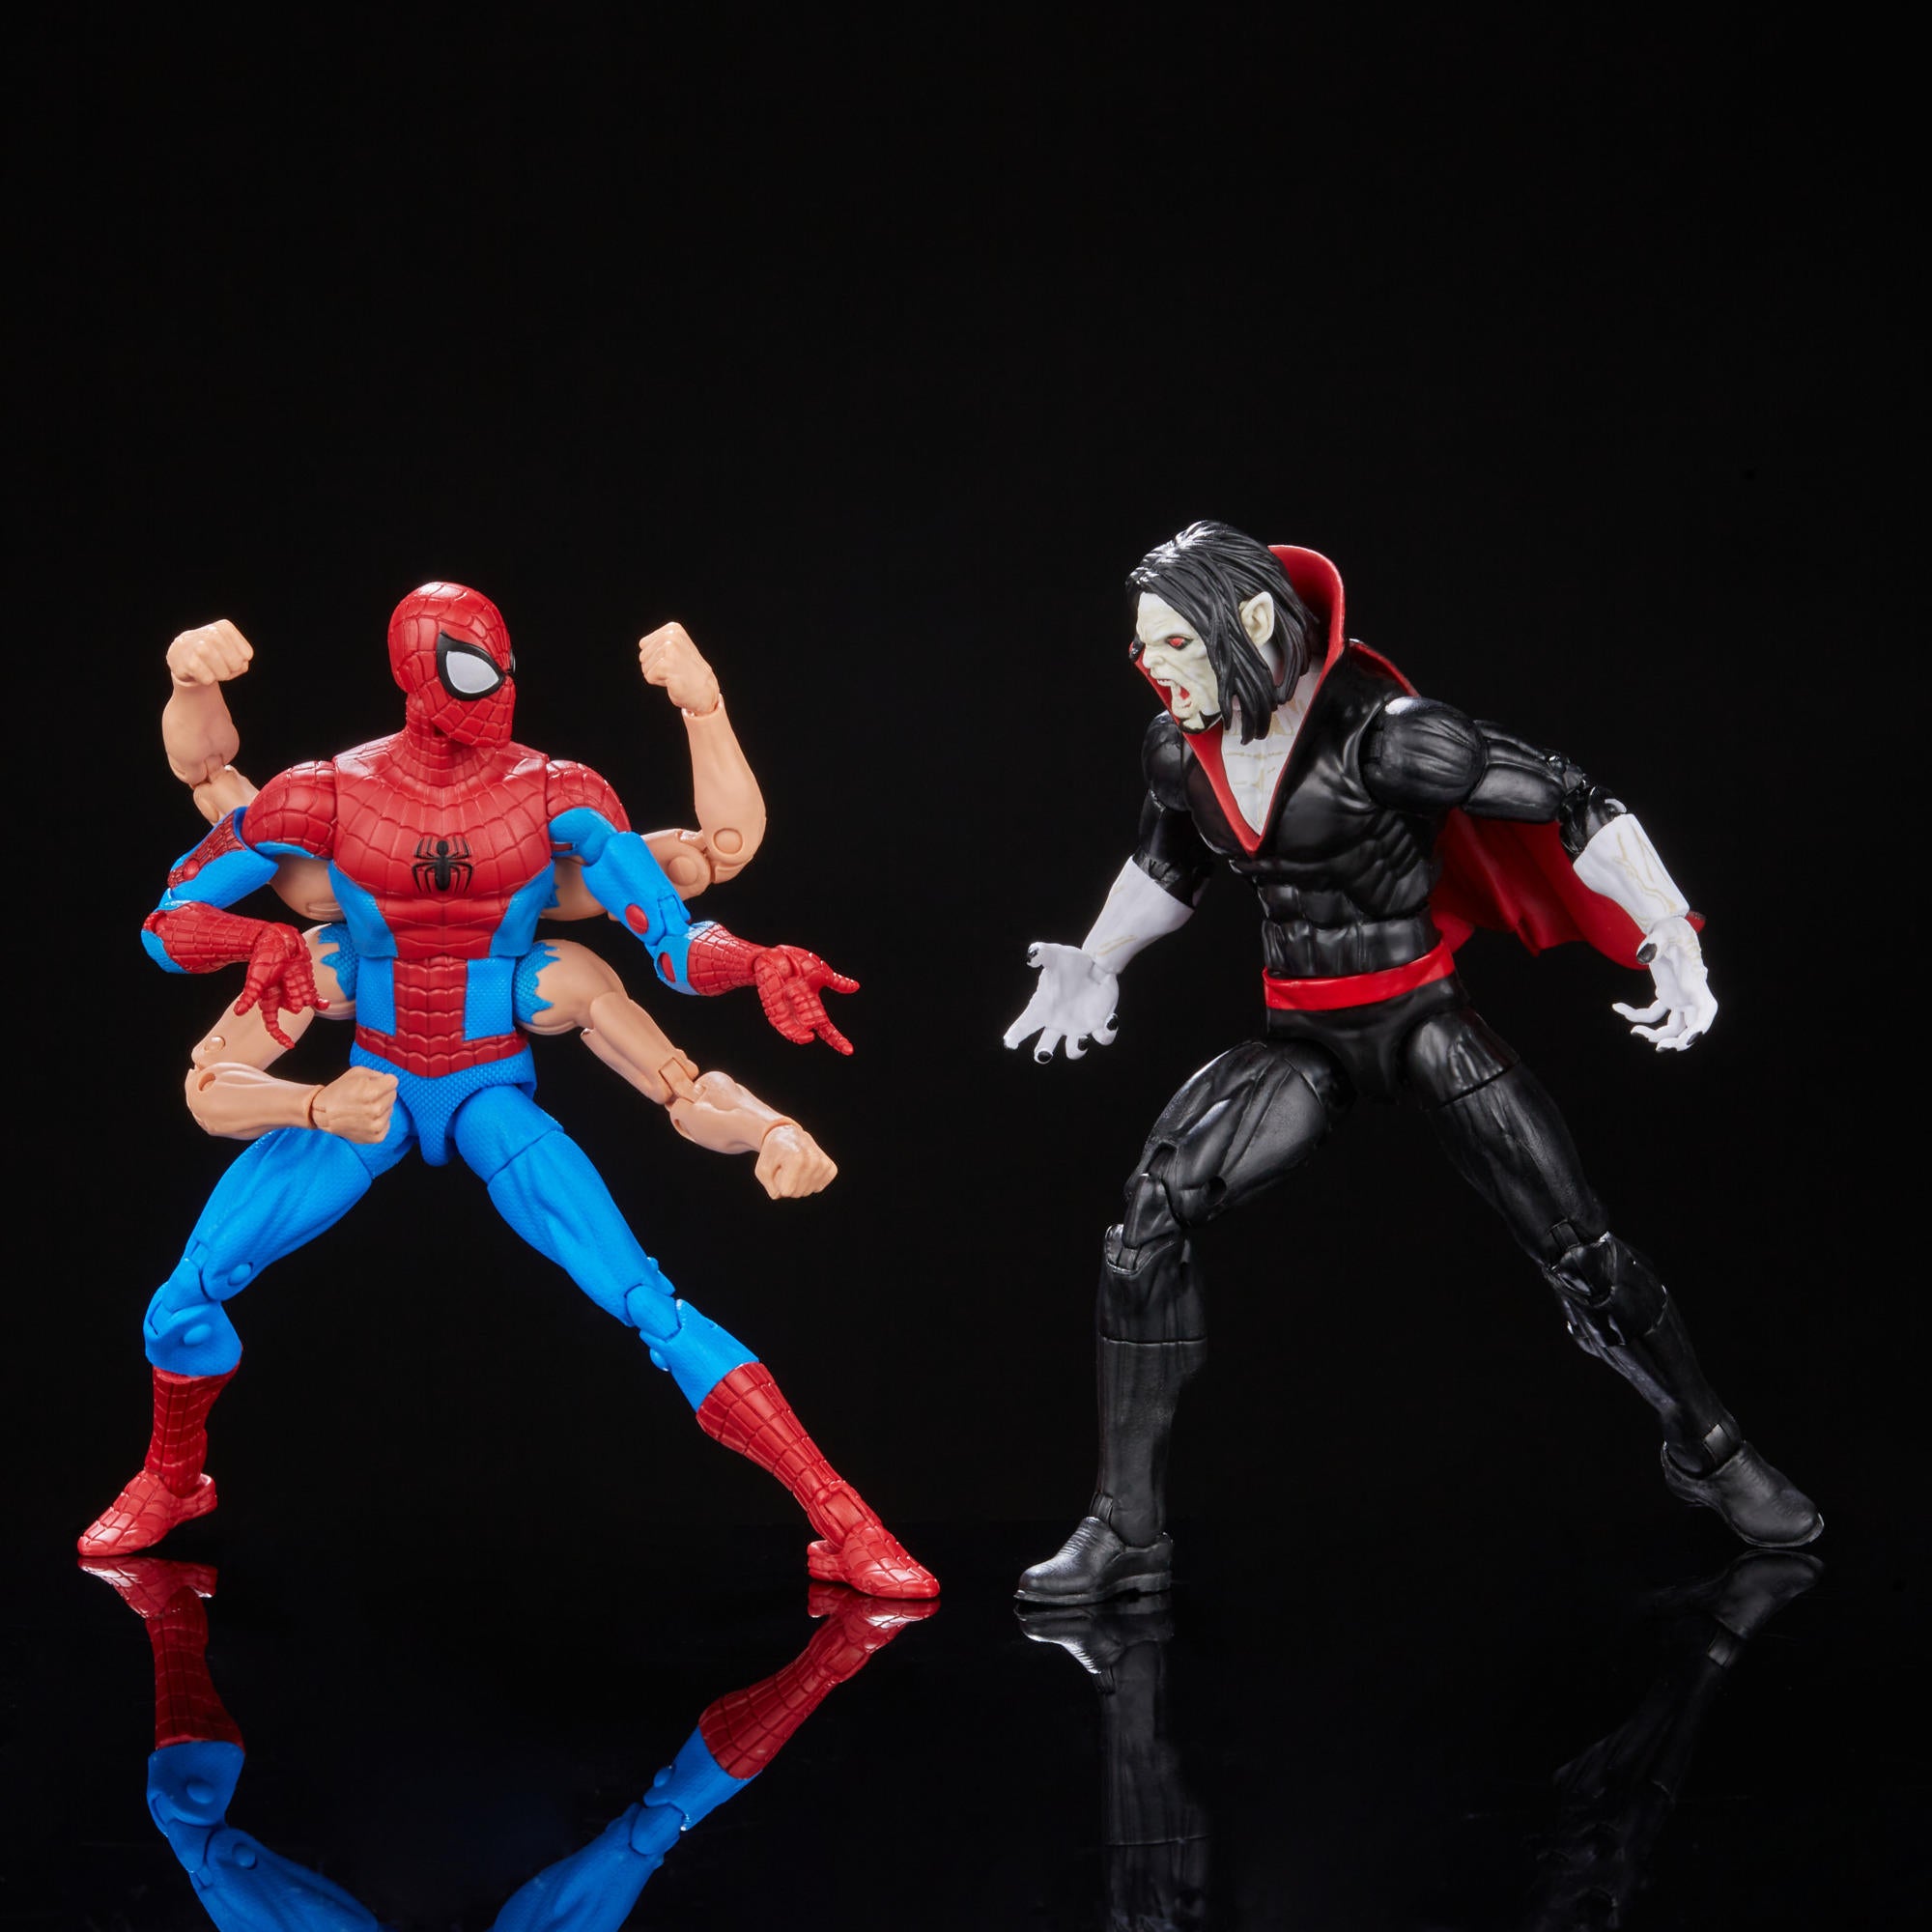 Marvel Legends Series Spider-Gwen